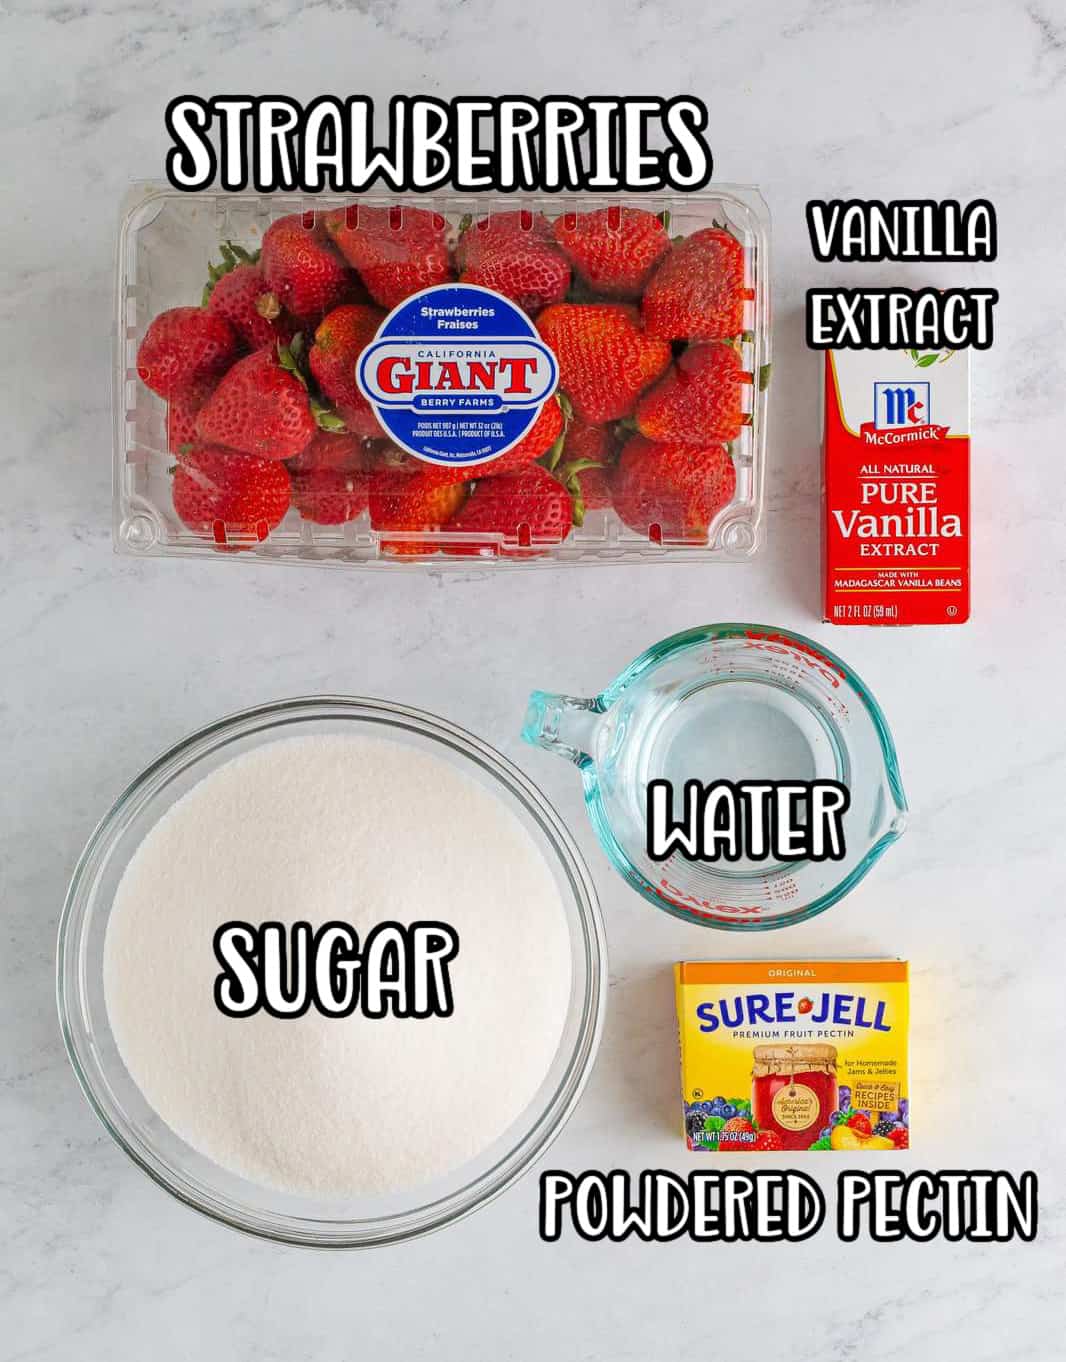 Strawberries, pectin powder, sugar, vanilla extract, and water. 